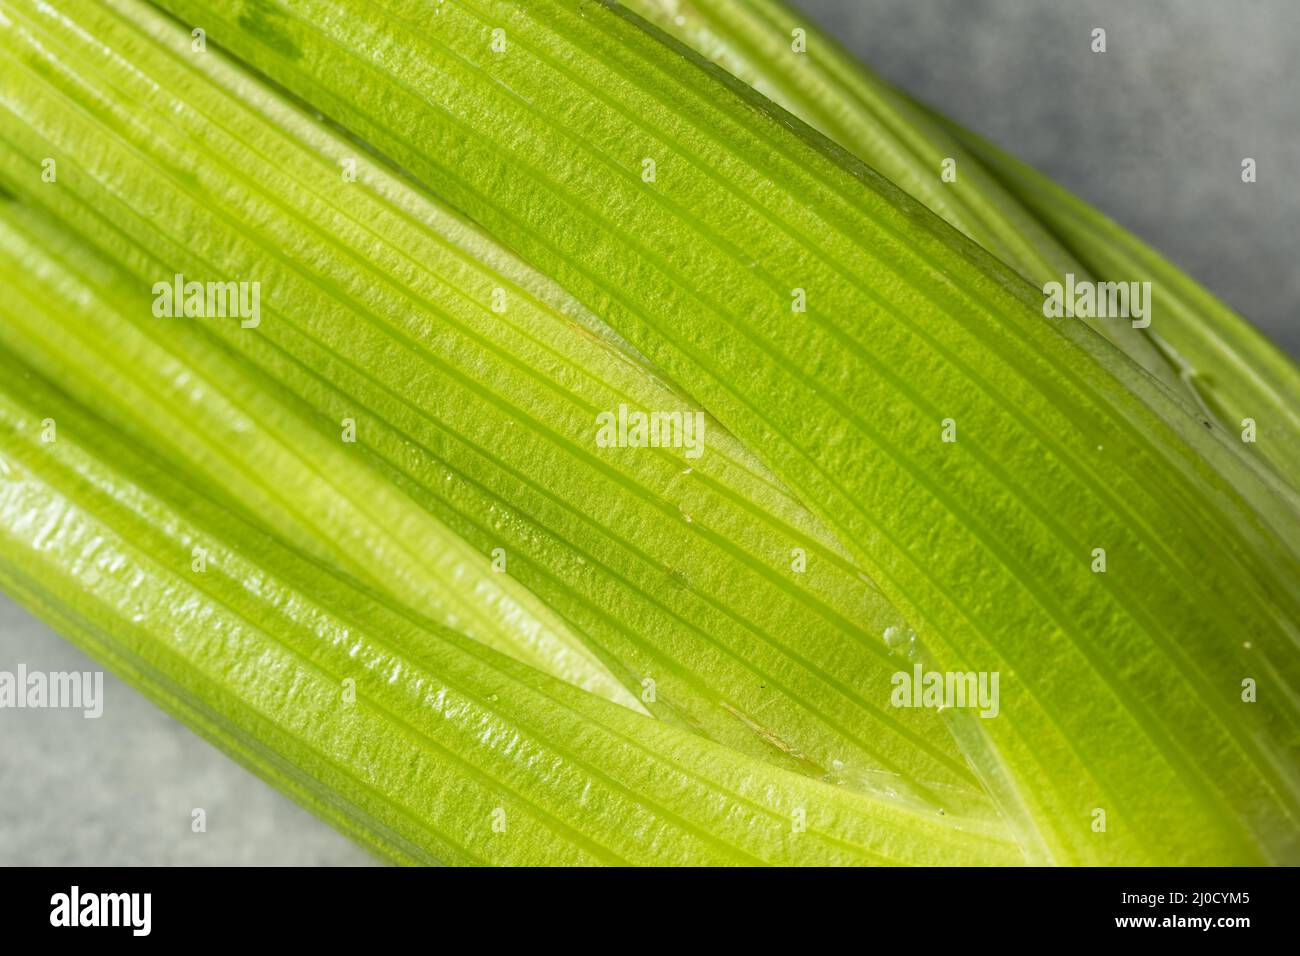 Rohe grüne Bio-Sellerie Stängel in einem Haufen Stockfoto